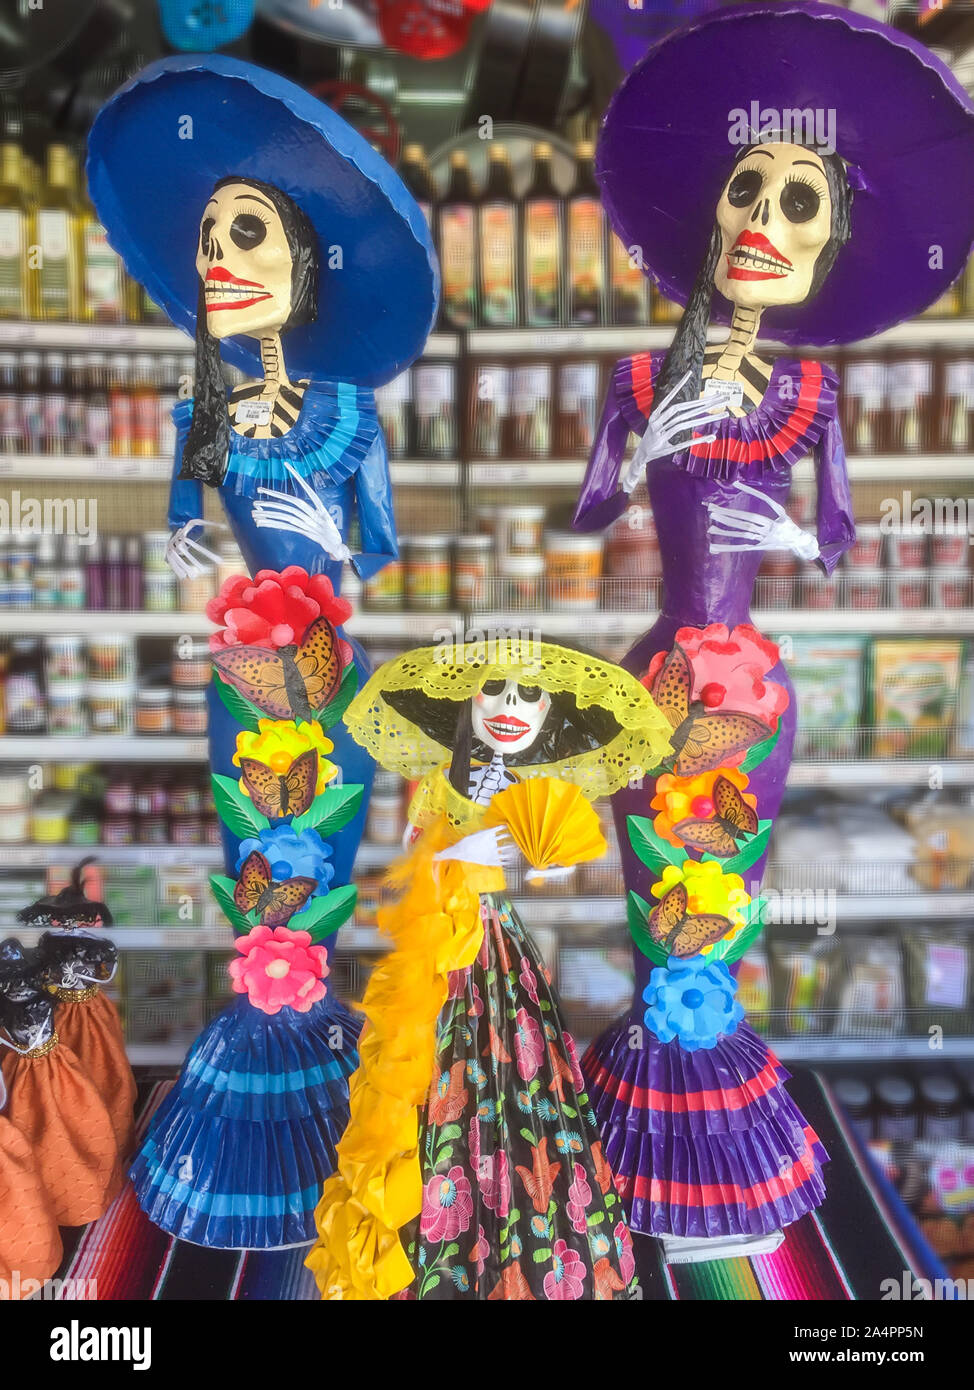 Pappmaché Figuren von La Catrina, Evocative der mexikanischen Kultur und der Tag der Toten feiern, machen beliebt Ornamente während der Halloween ein Stockfoto